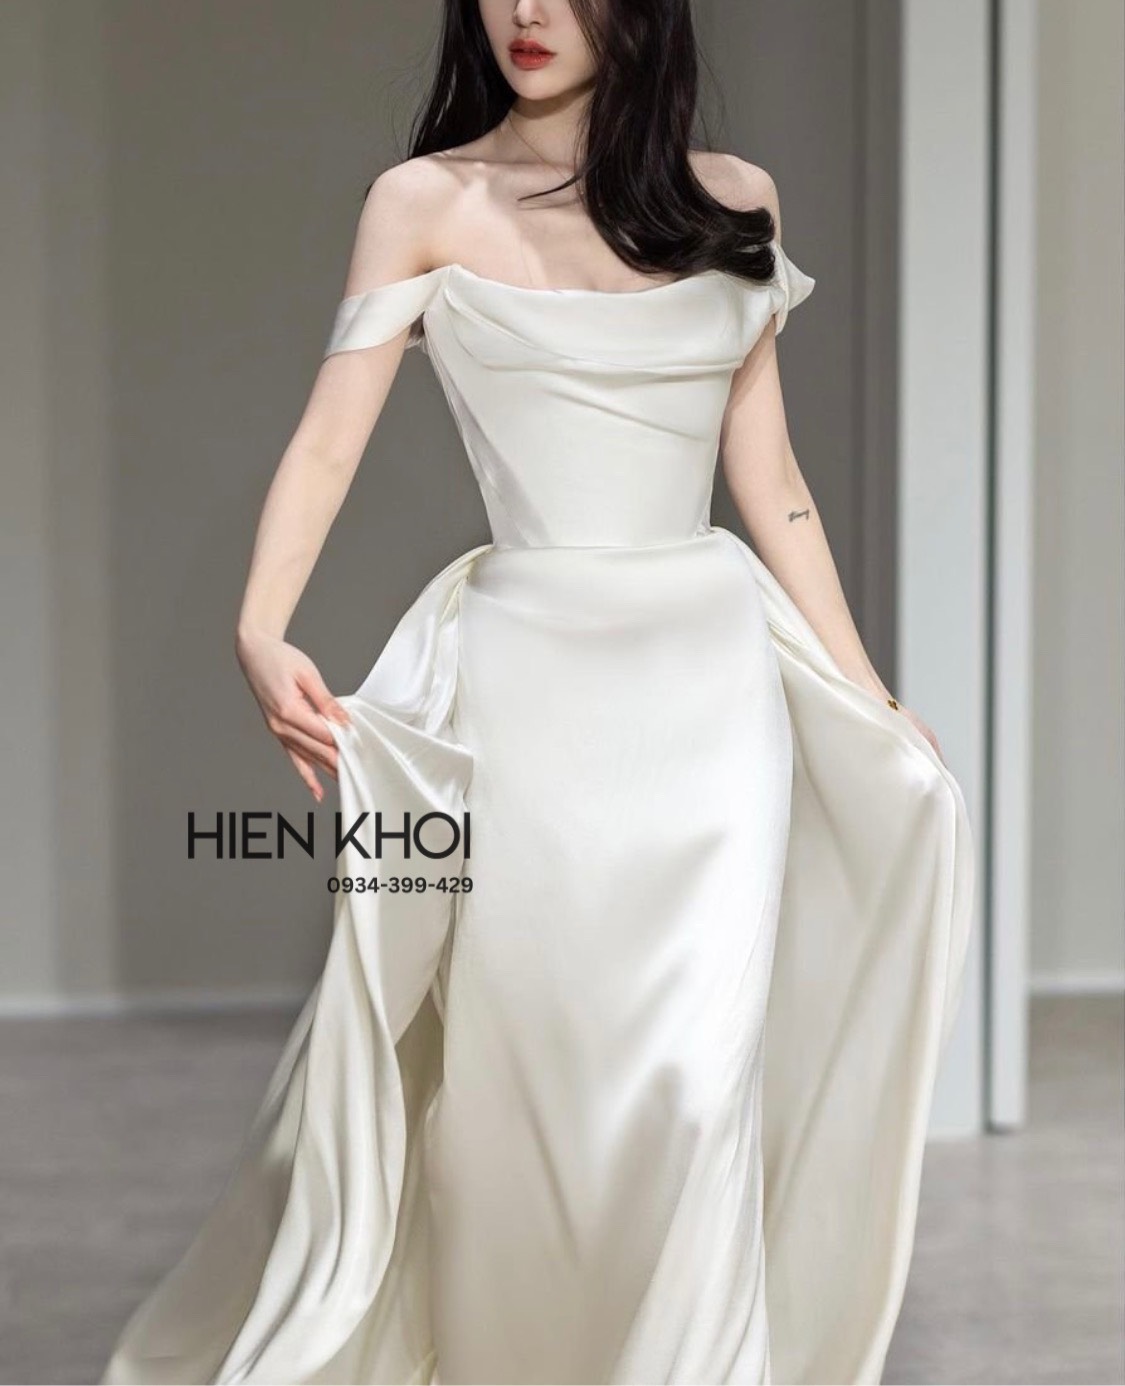 price tailoring wedding dress in Vietnam